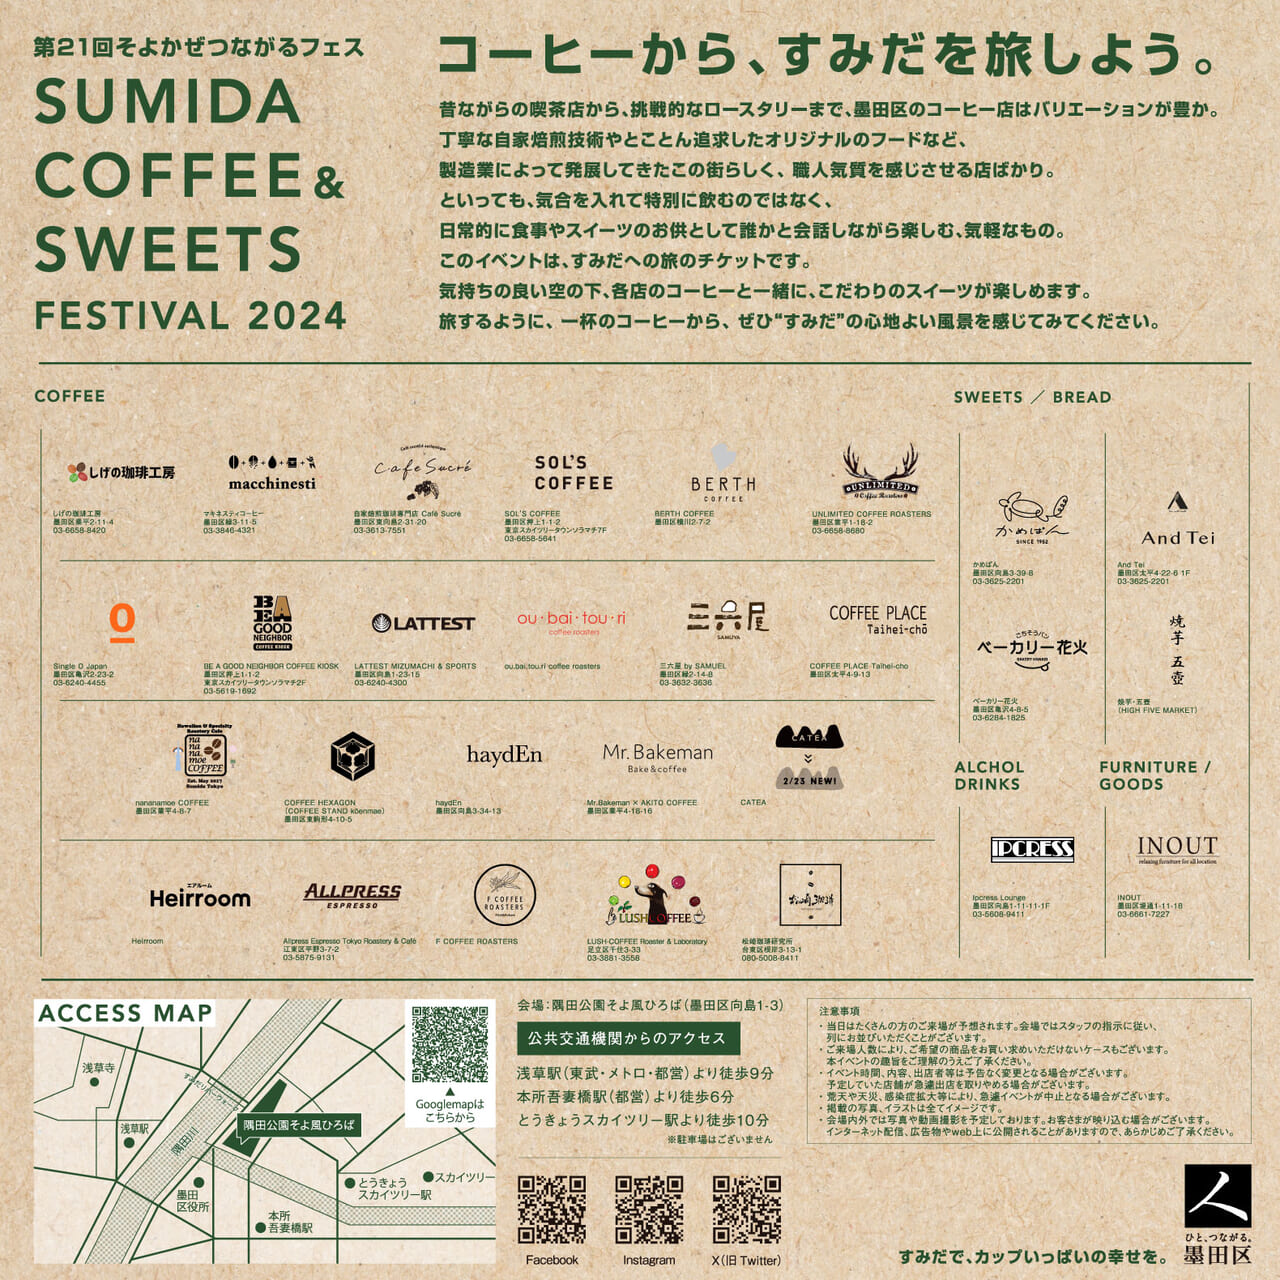 Sumida Coffee Festivalimage